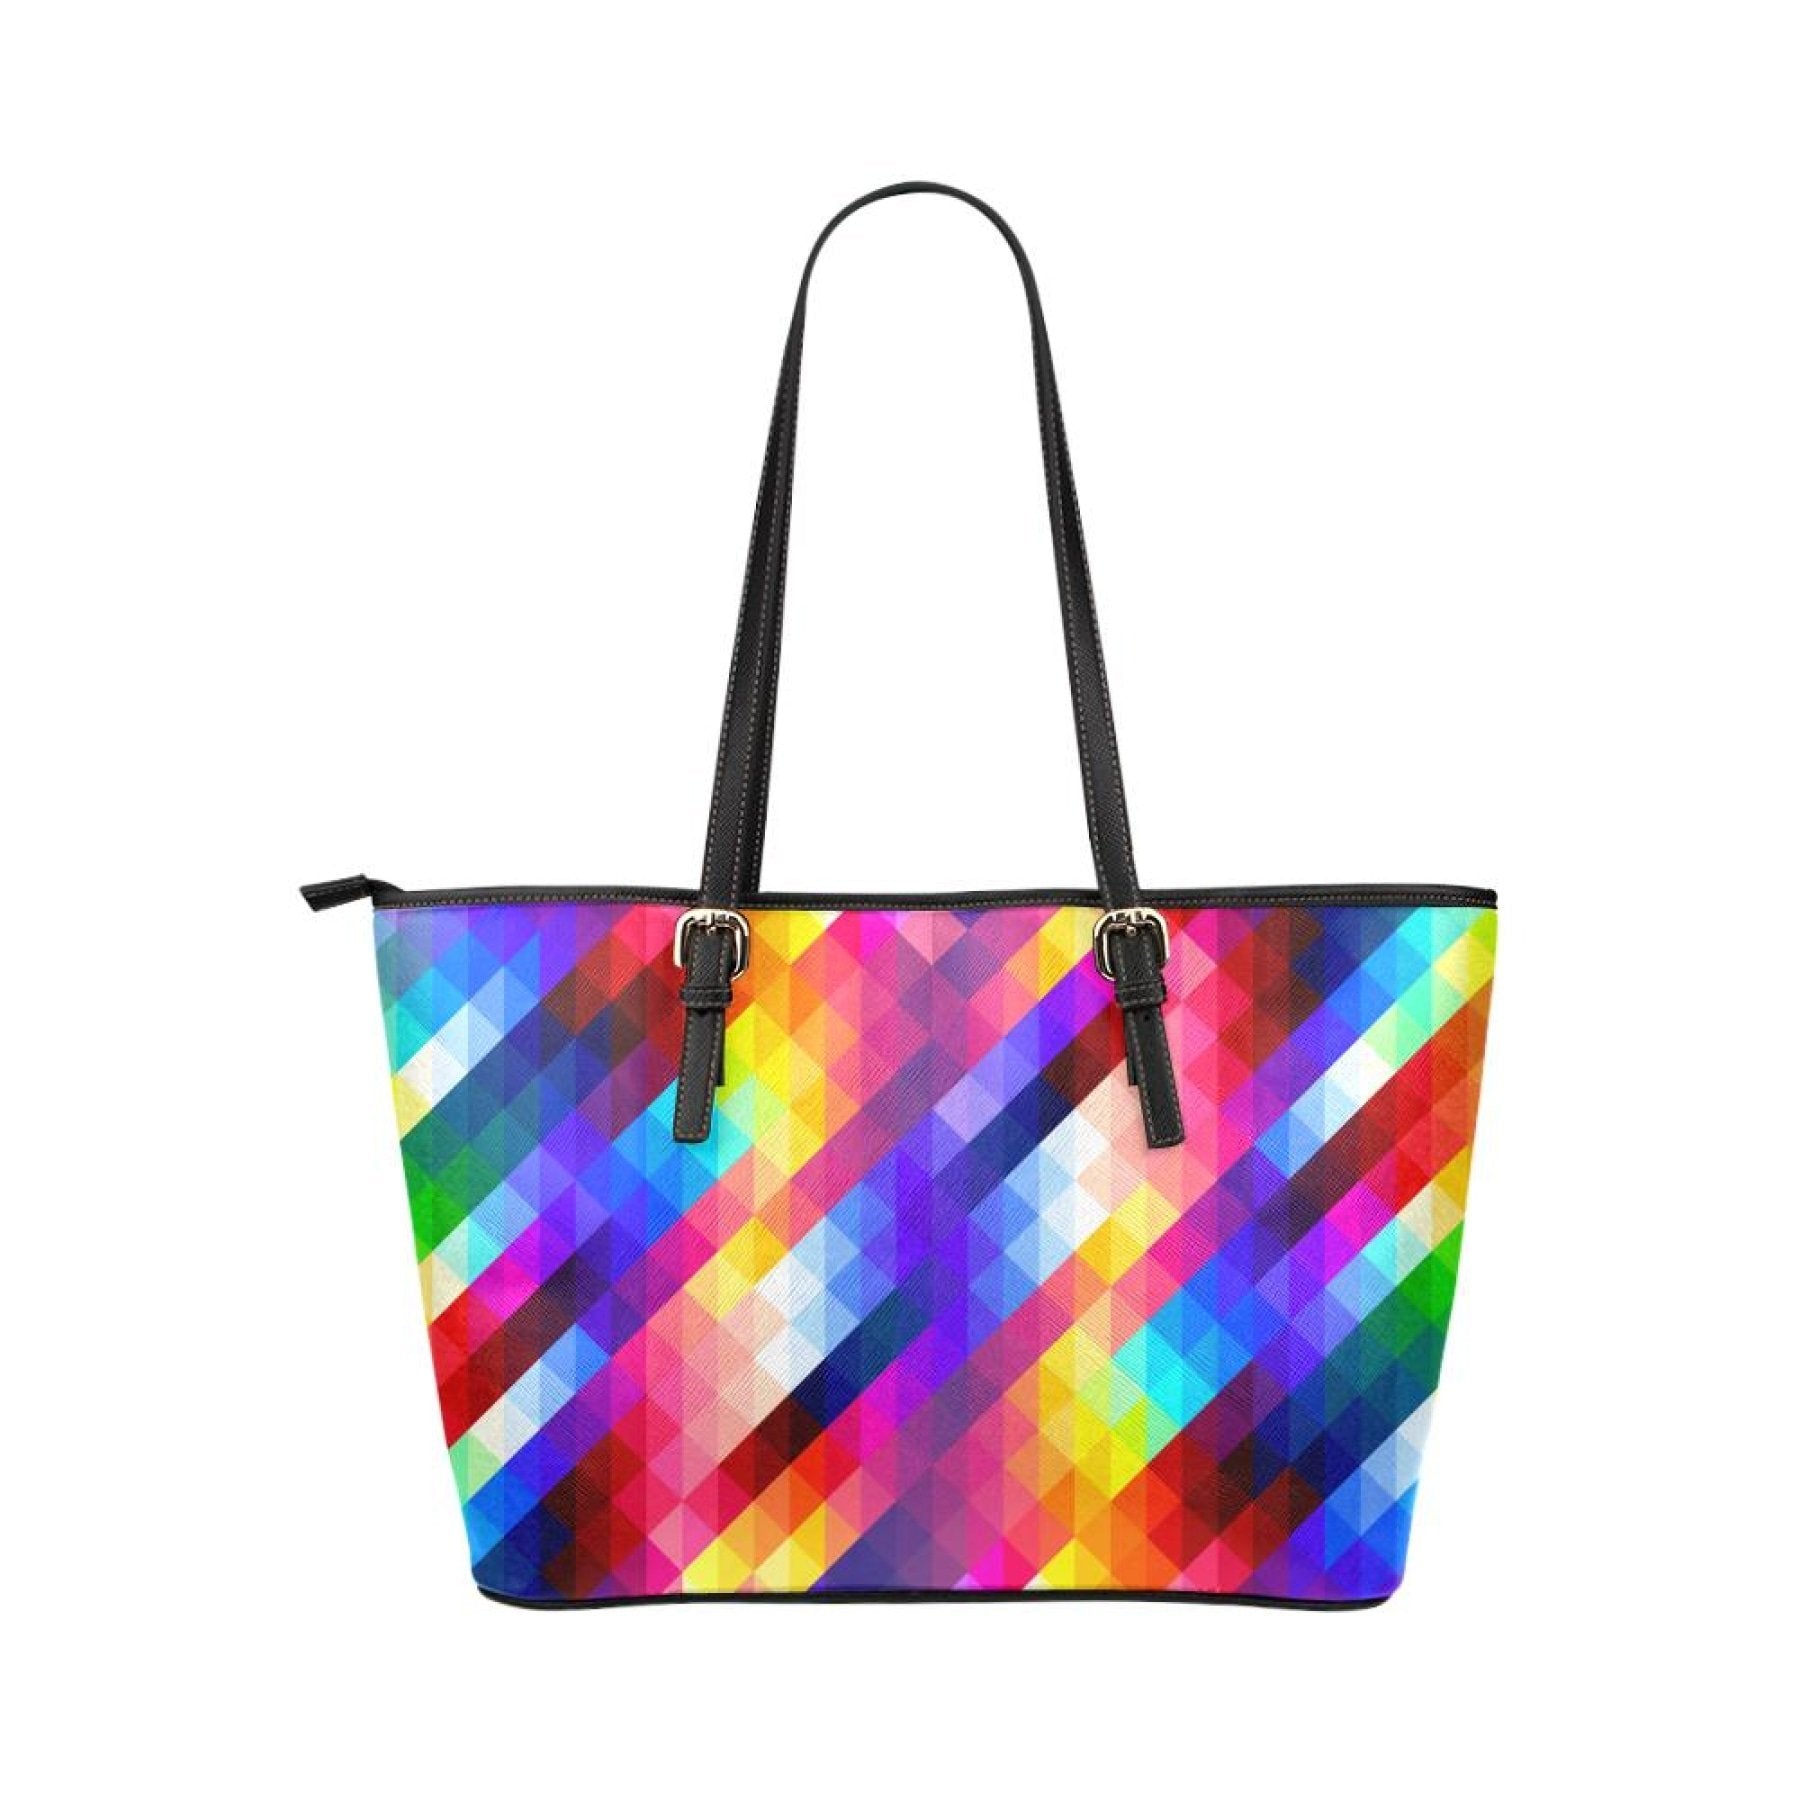 Women's Leather Tote Bag, Multicolor Grid Double Handle Handbag Grey Coco